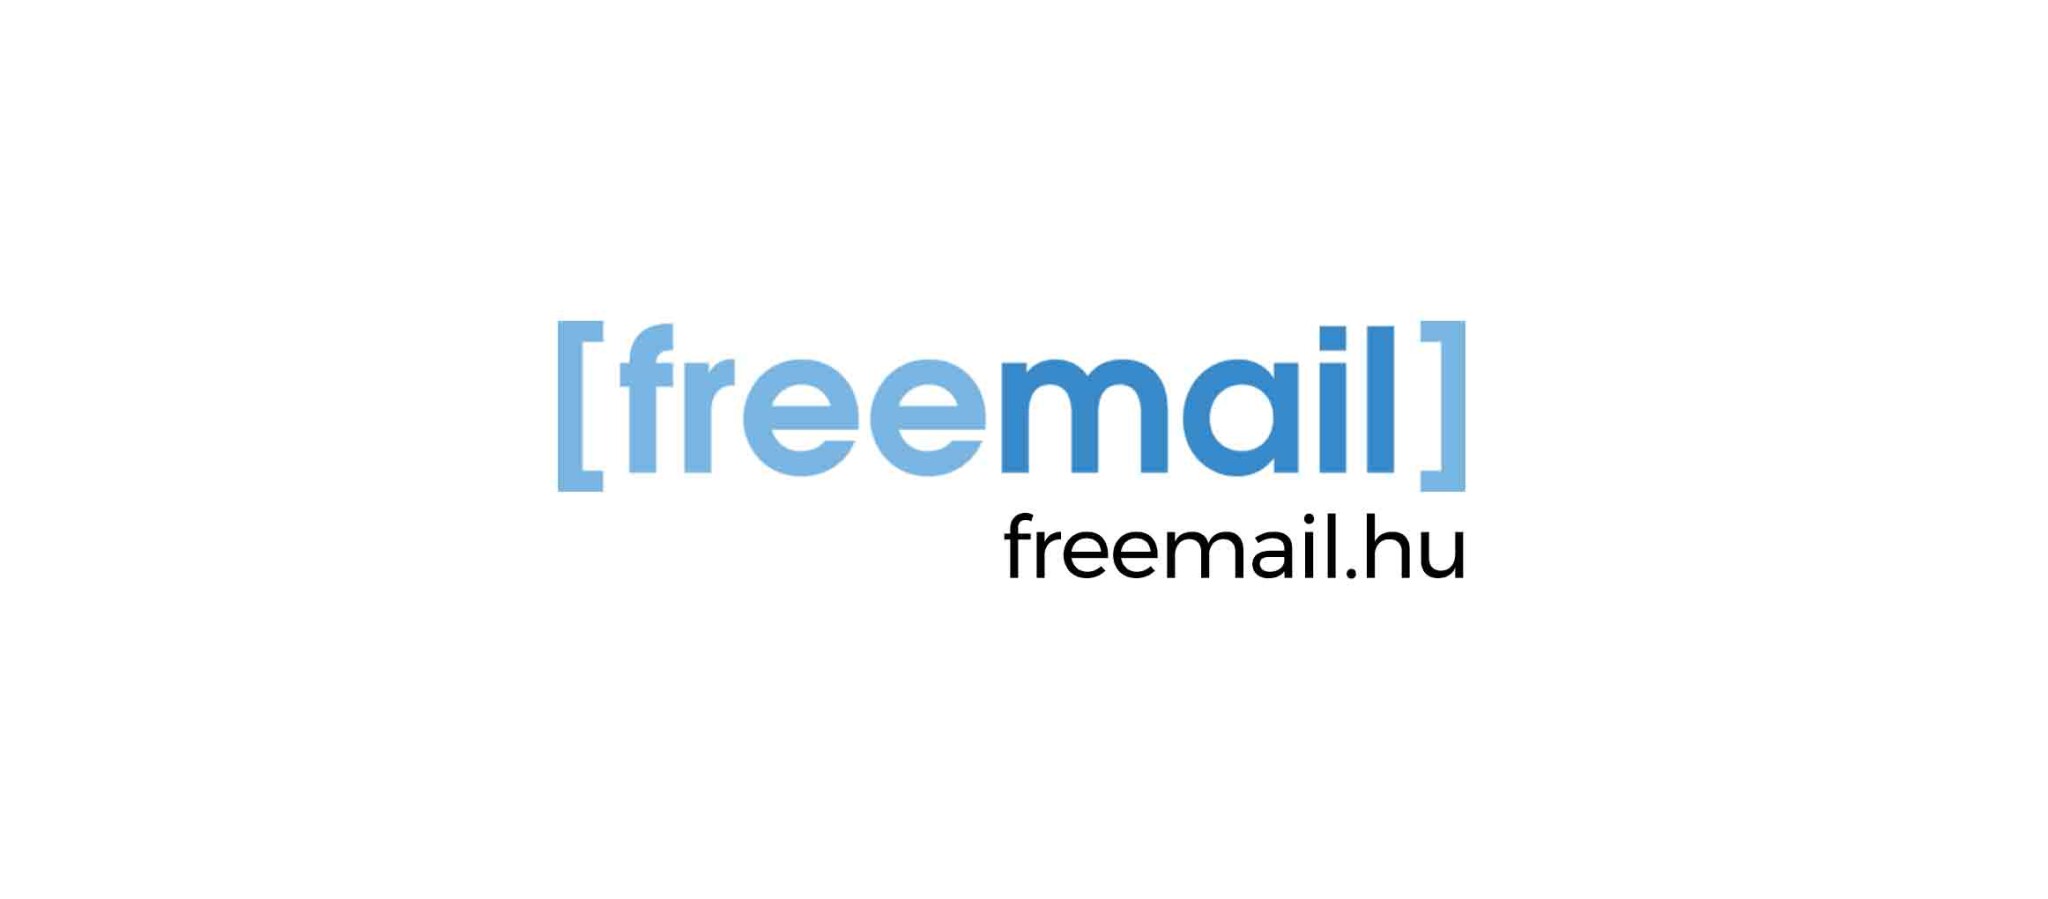 A Freemail-üzlet háttere: egyszerűsödik a kormánypárti médiagépezet – az adatainkat is érinti